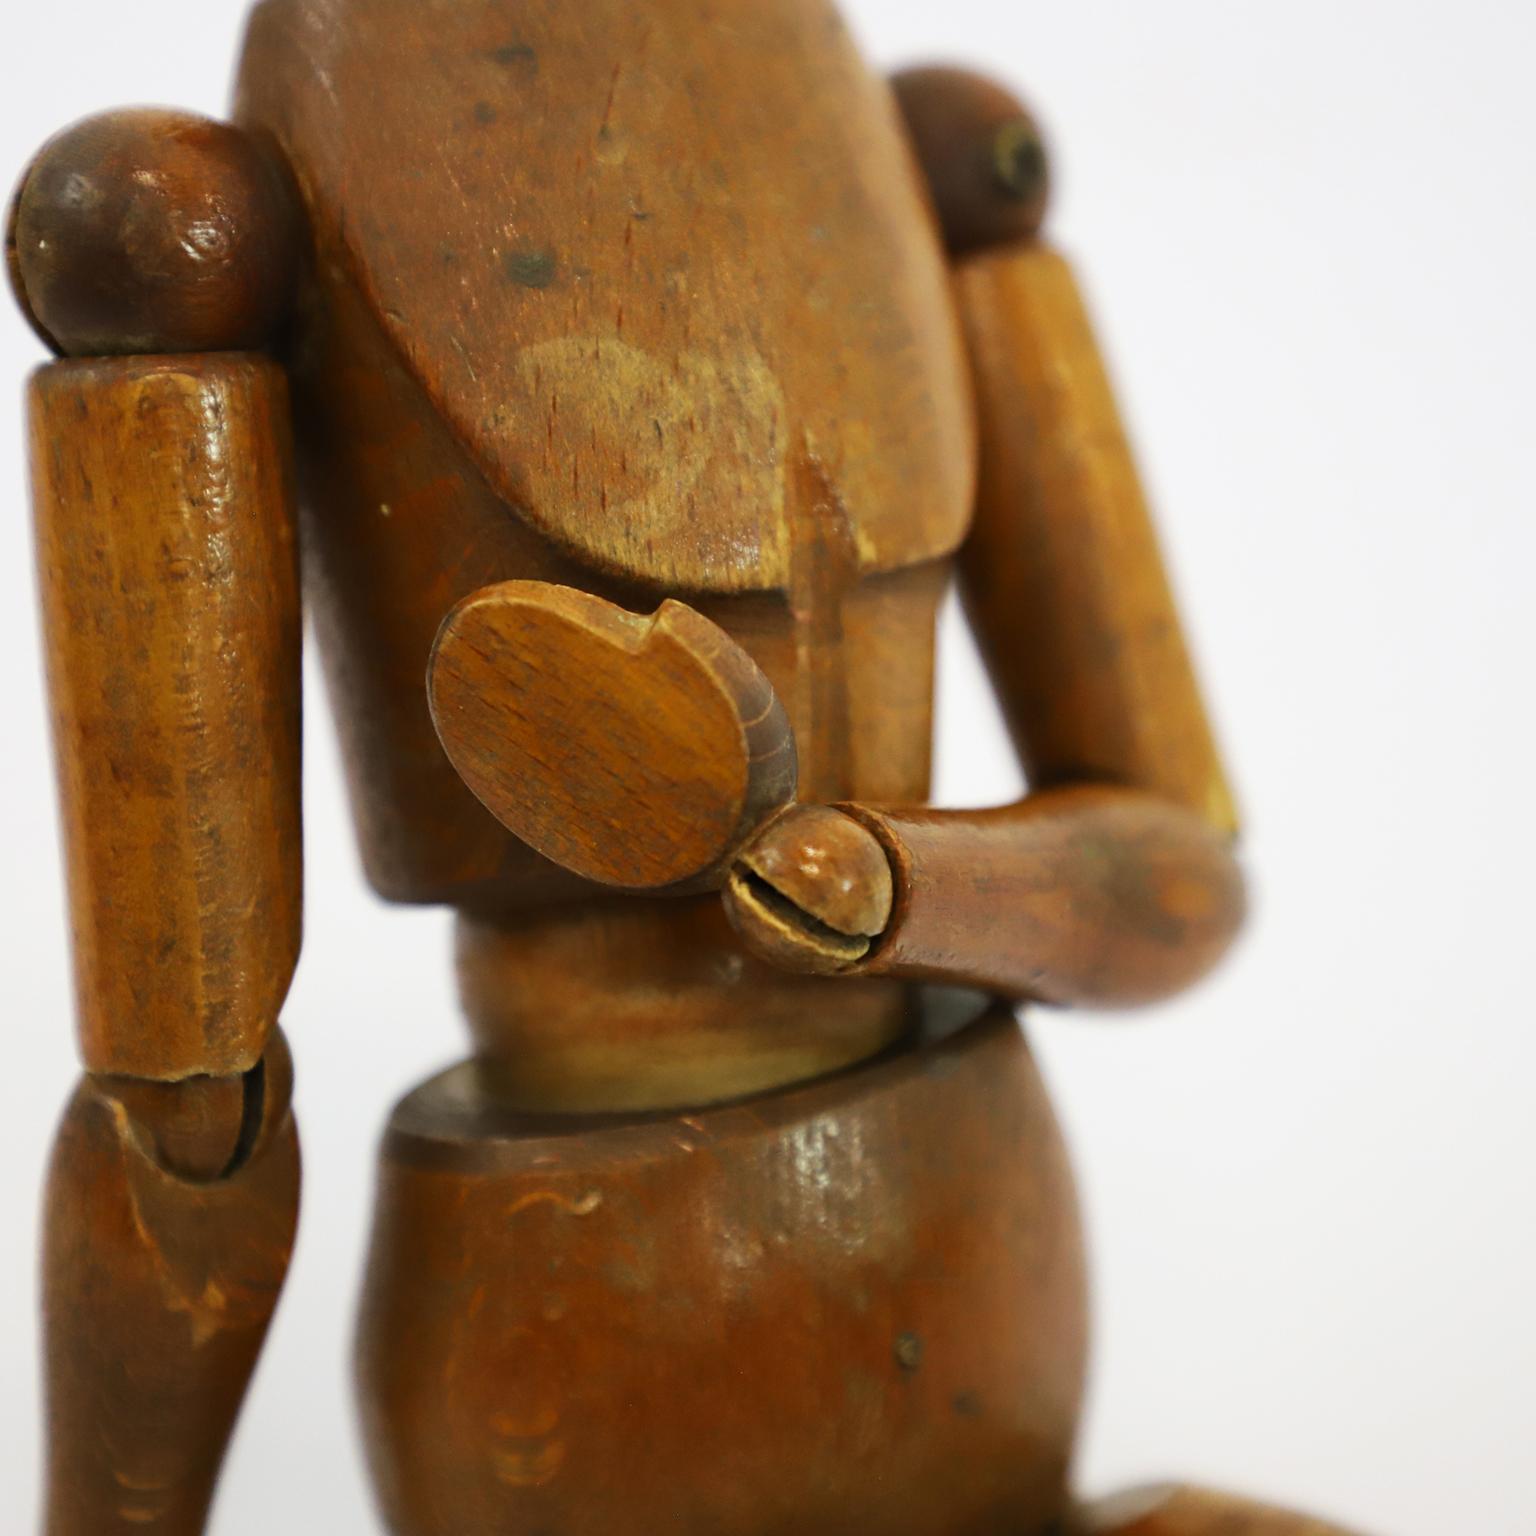 Circa 1940. Nous vous proposons ce mannequin d'artiste articulé ancien en bois de chêne.